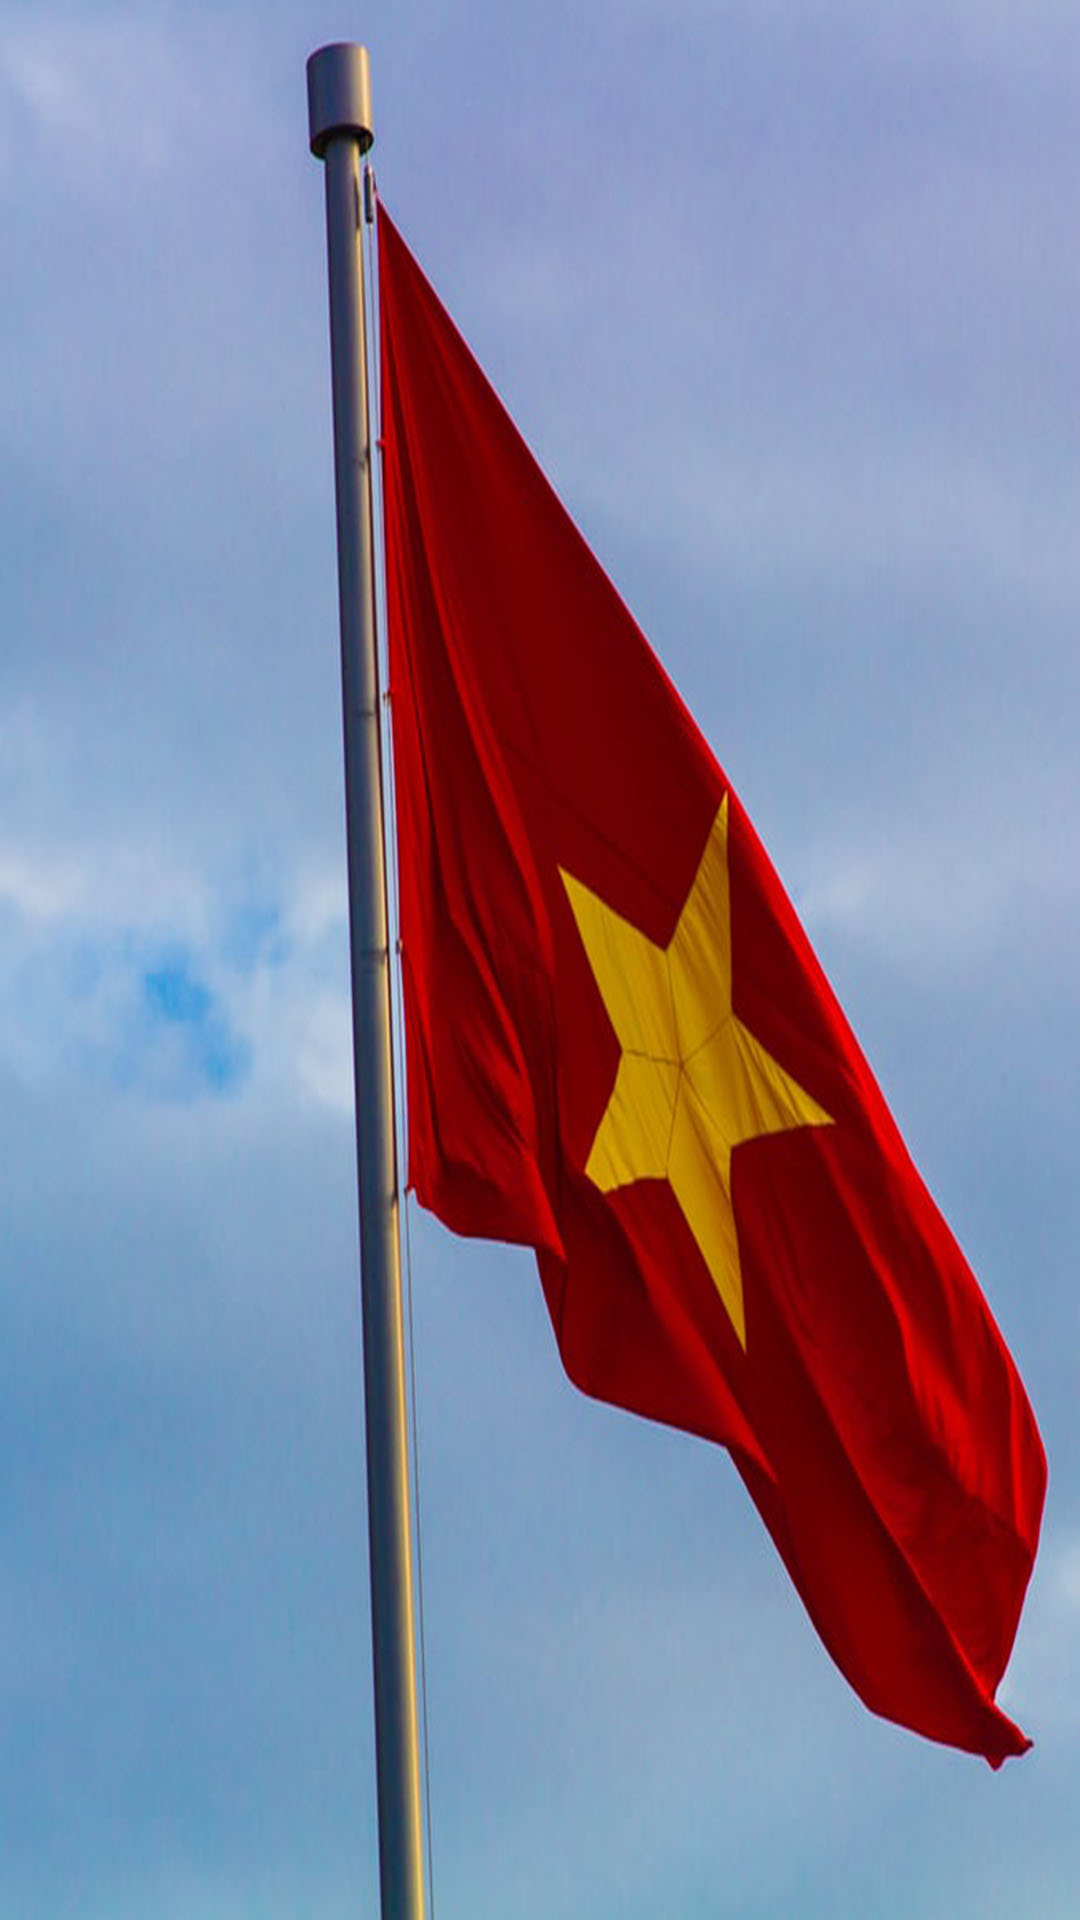 Hình nền cờ Việt Nam đẹp 2024 chắc chắn sẽ khiến bạn bị thu hút ngay từ cái nhìn đầu tiên. Thiết kế chuyên nghiệp, tinh tế và đậm chất truyền thống mang lại cho người xem cảm giác ấm áp, thiết tha. Bạn có thể sử dụng hình ảnh này để trang trí máy tính, điện thoại, hay tường nhà với mong muốn gửi gắm những thông điệp về tình yêu đất nước của mình.